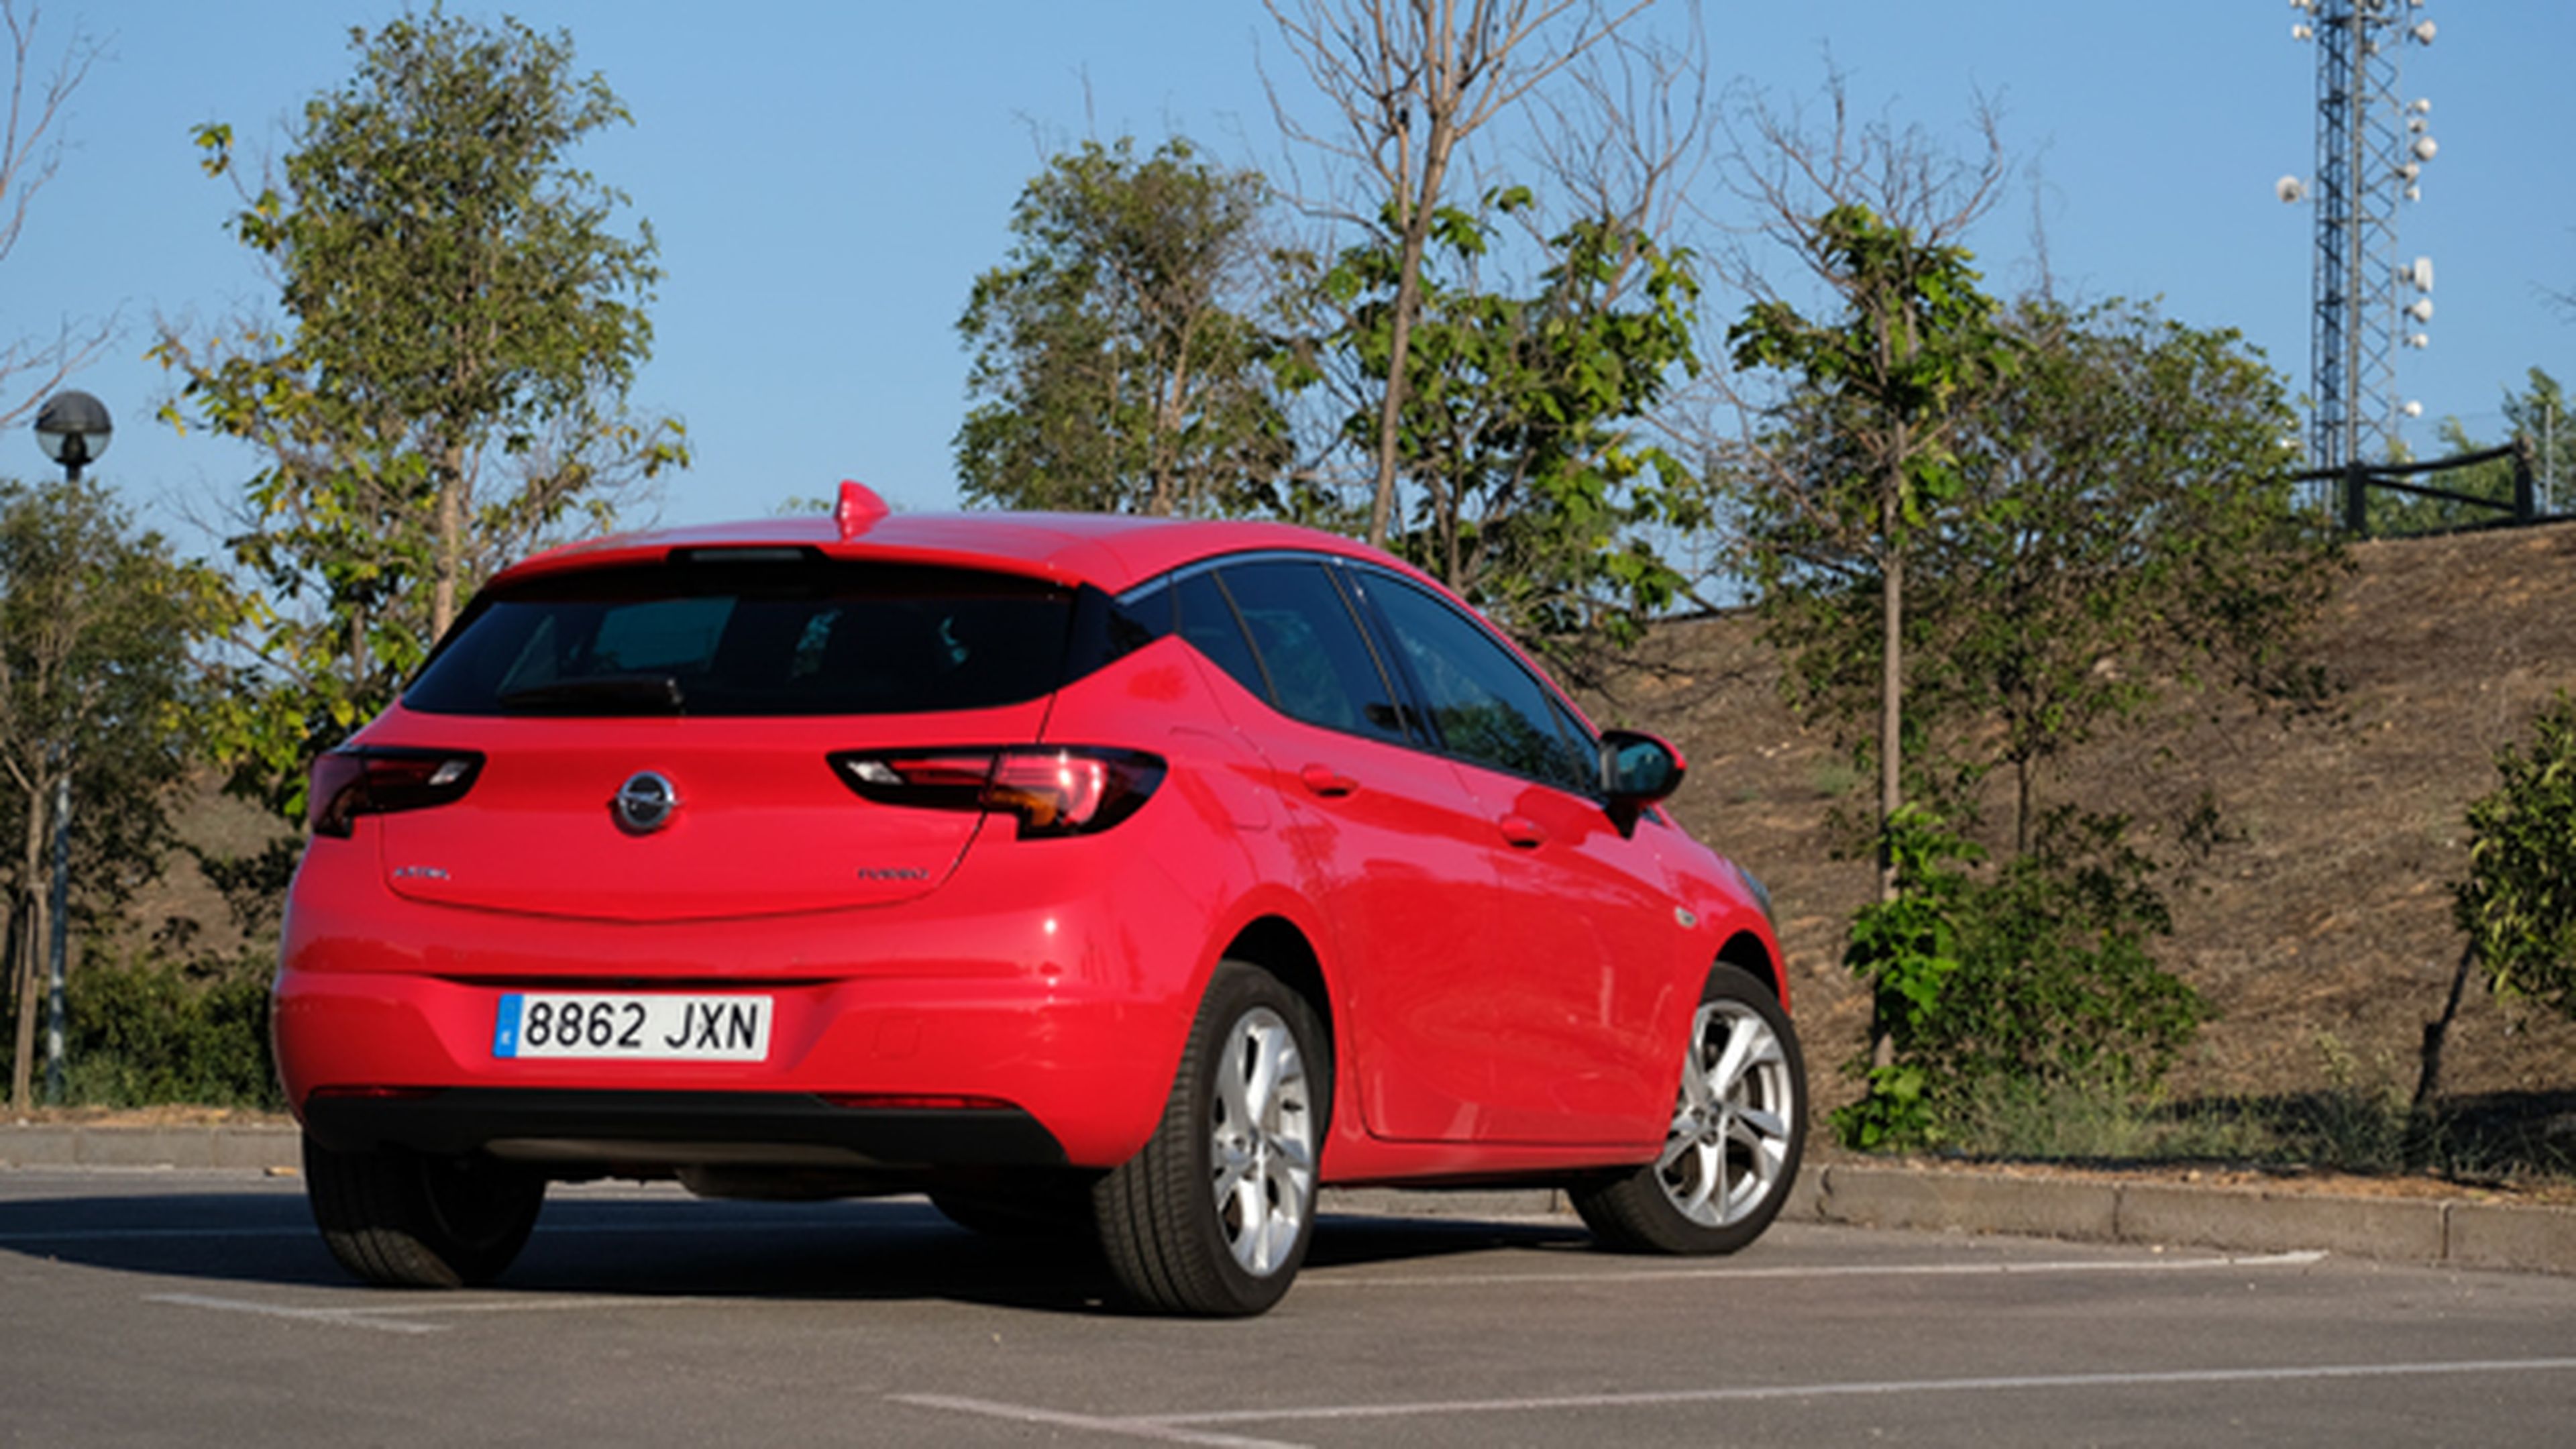 Opel Astra, hasta aquí llega nuestro análisis